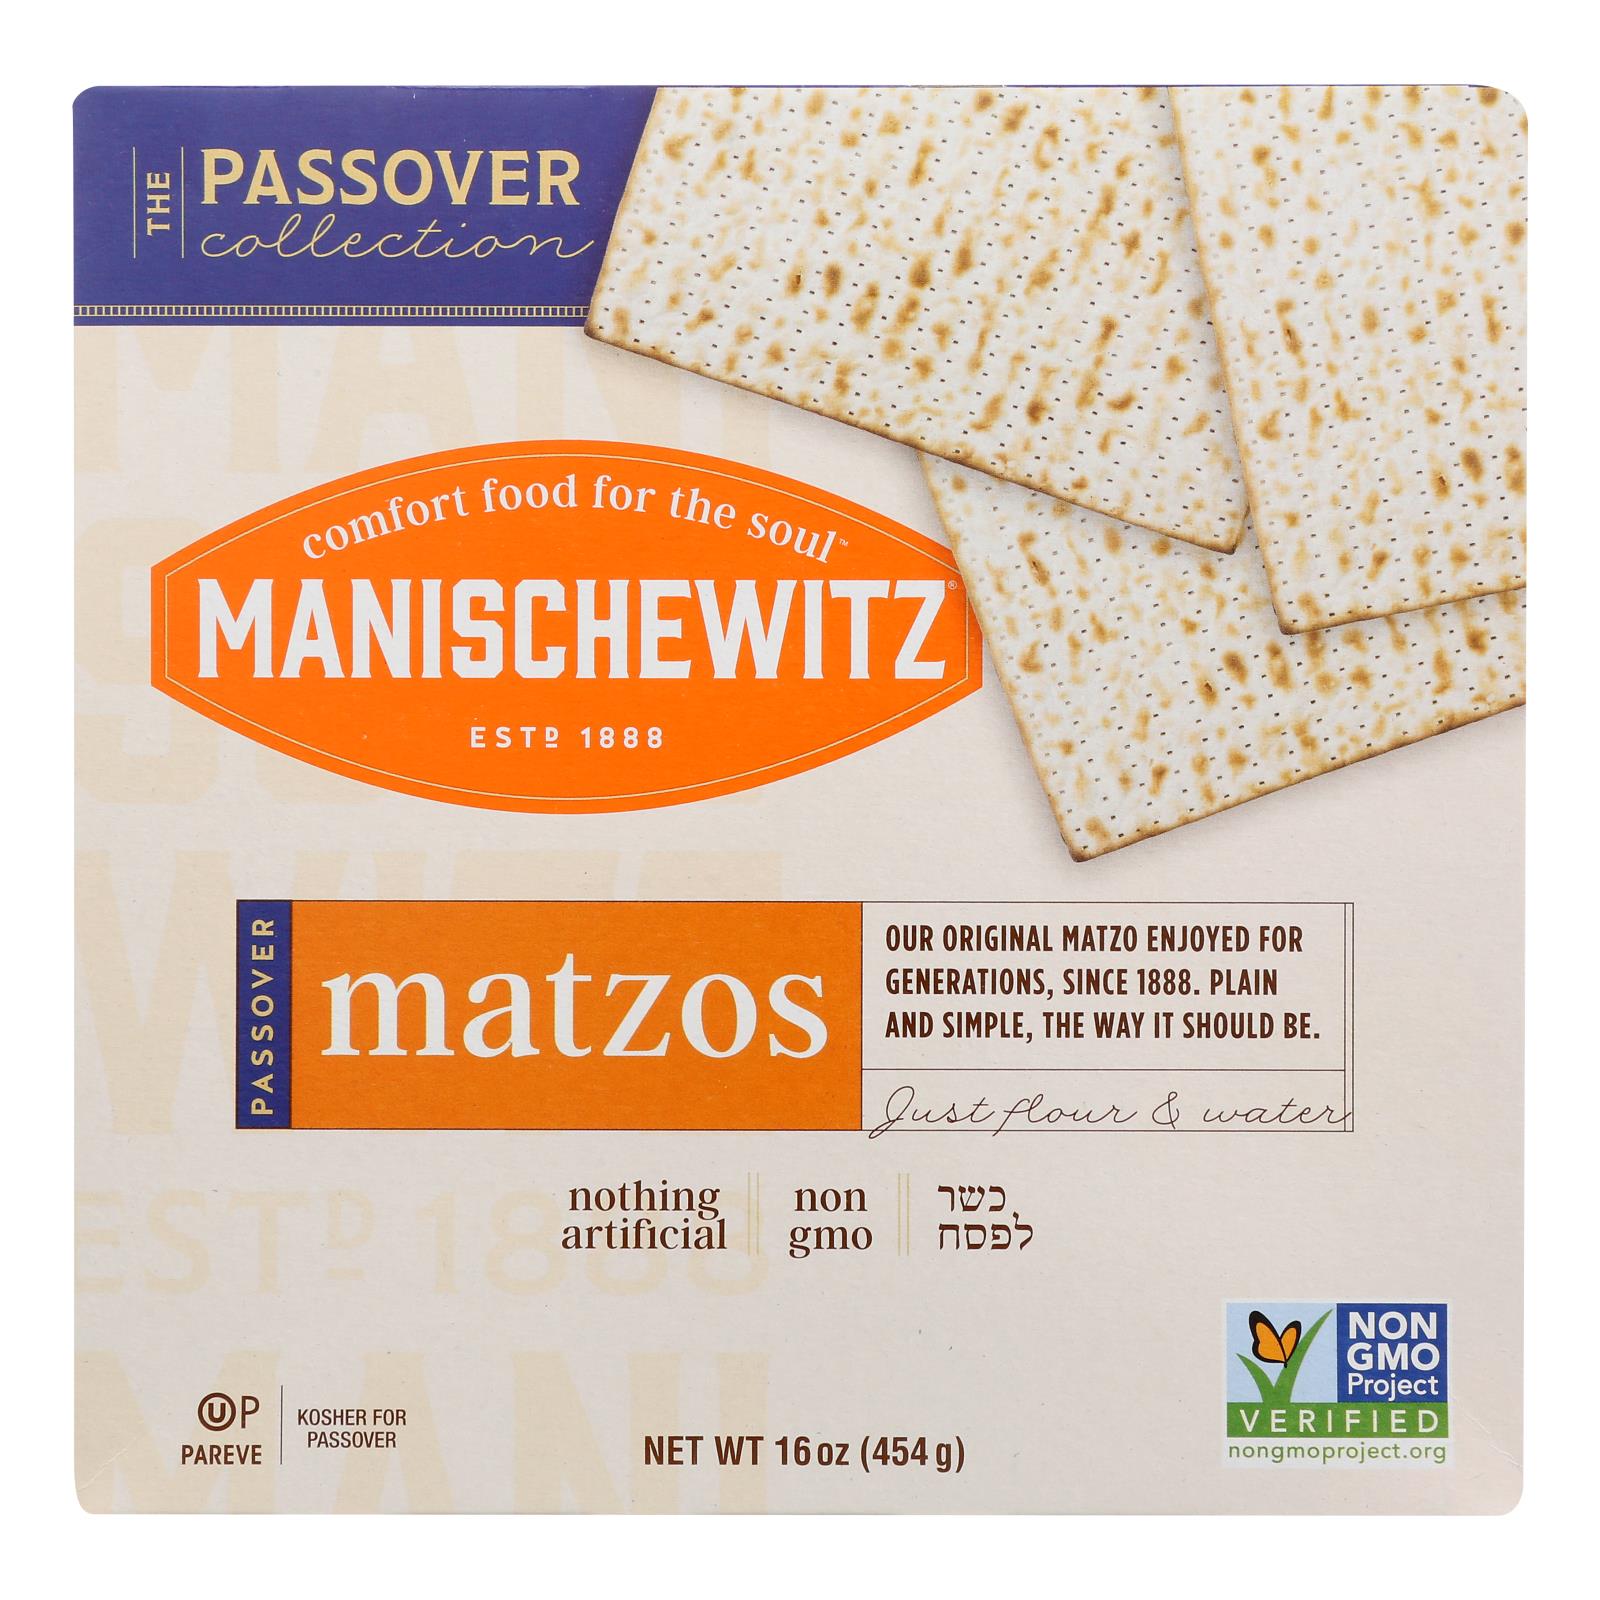 Manischewitz, Manischewitz - Matzo 1S - Caisse de 30 - 1 lb (paquet de 30)